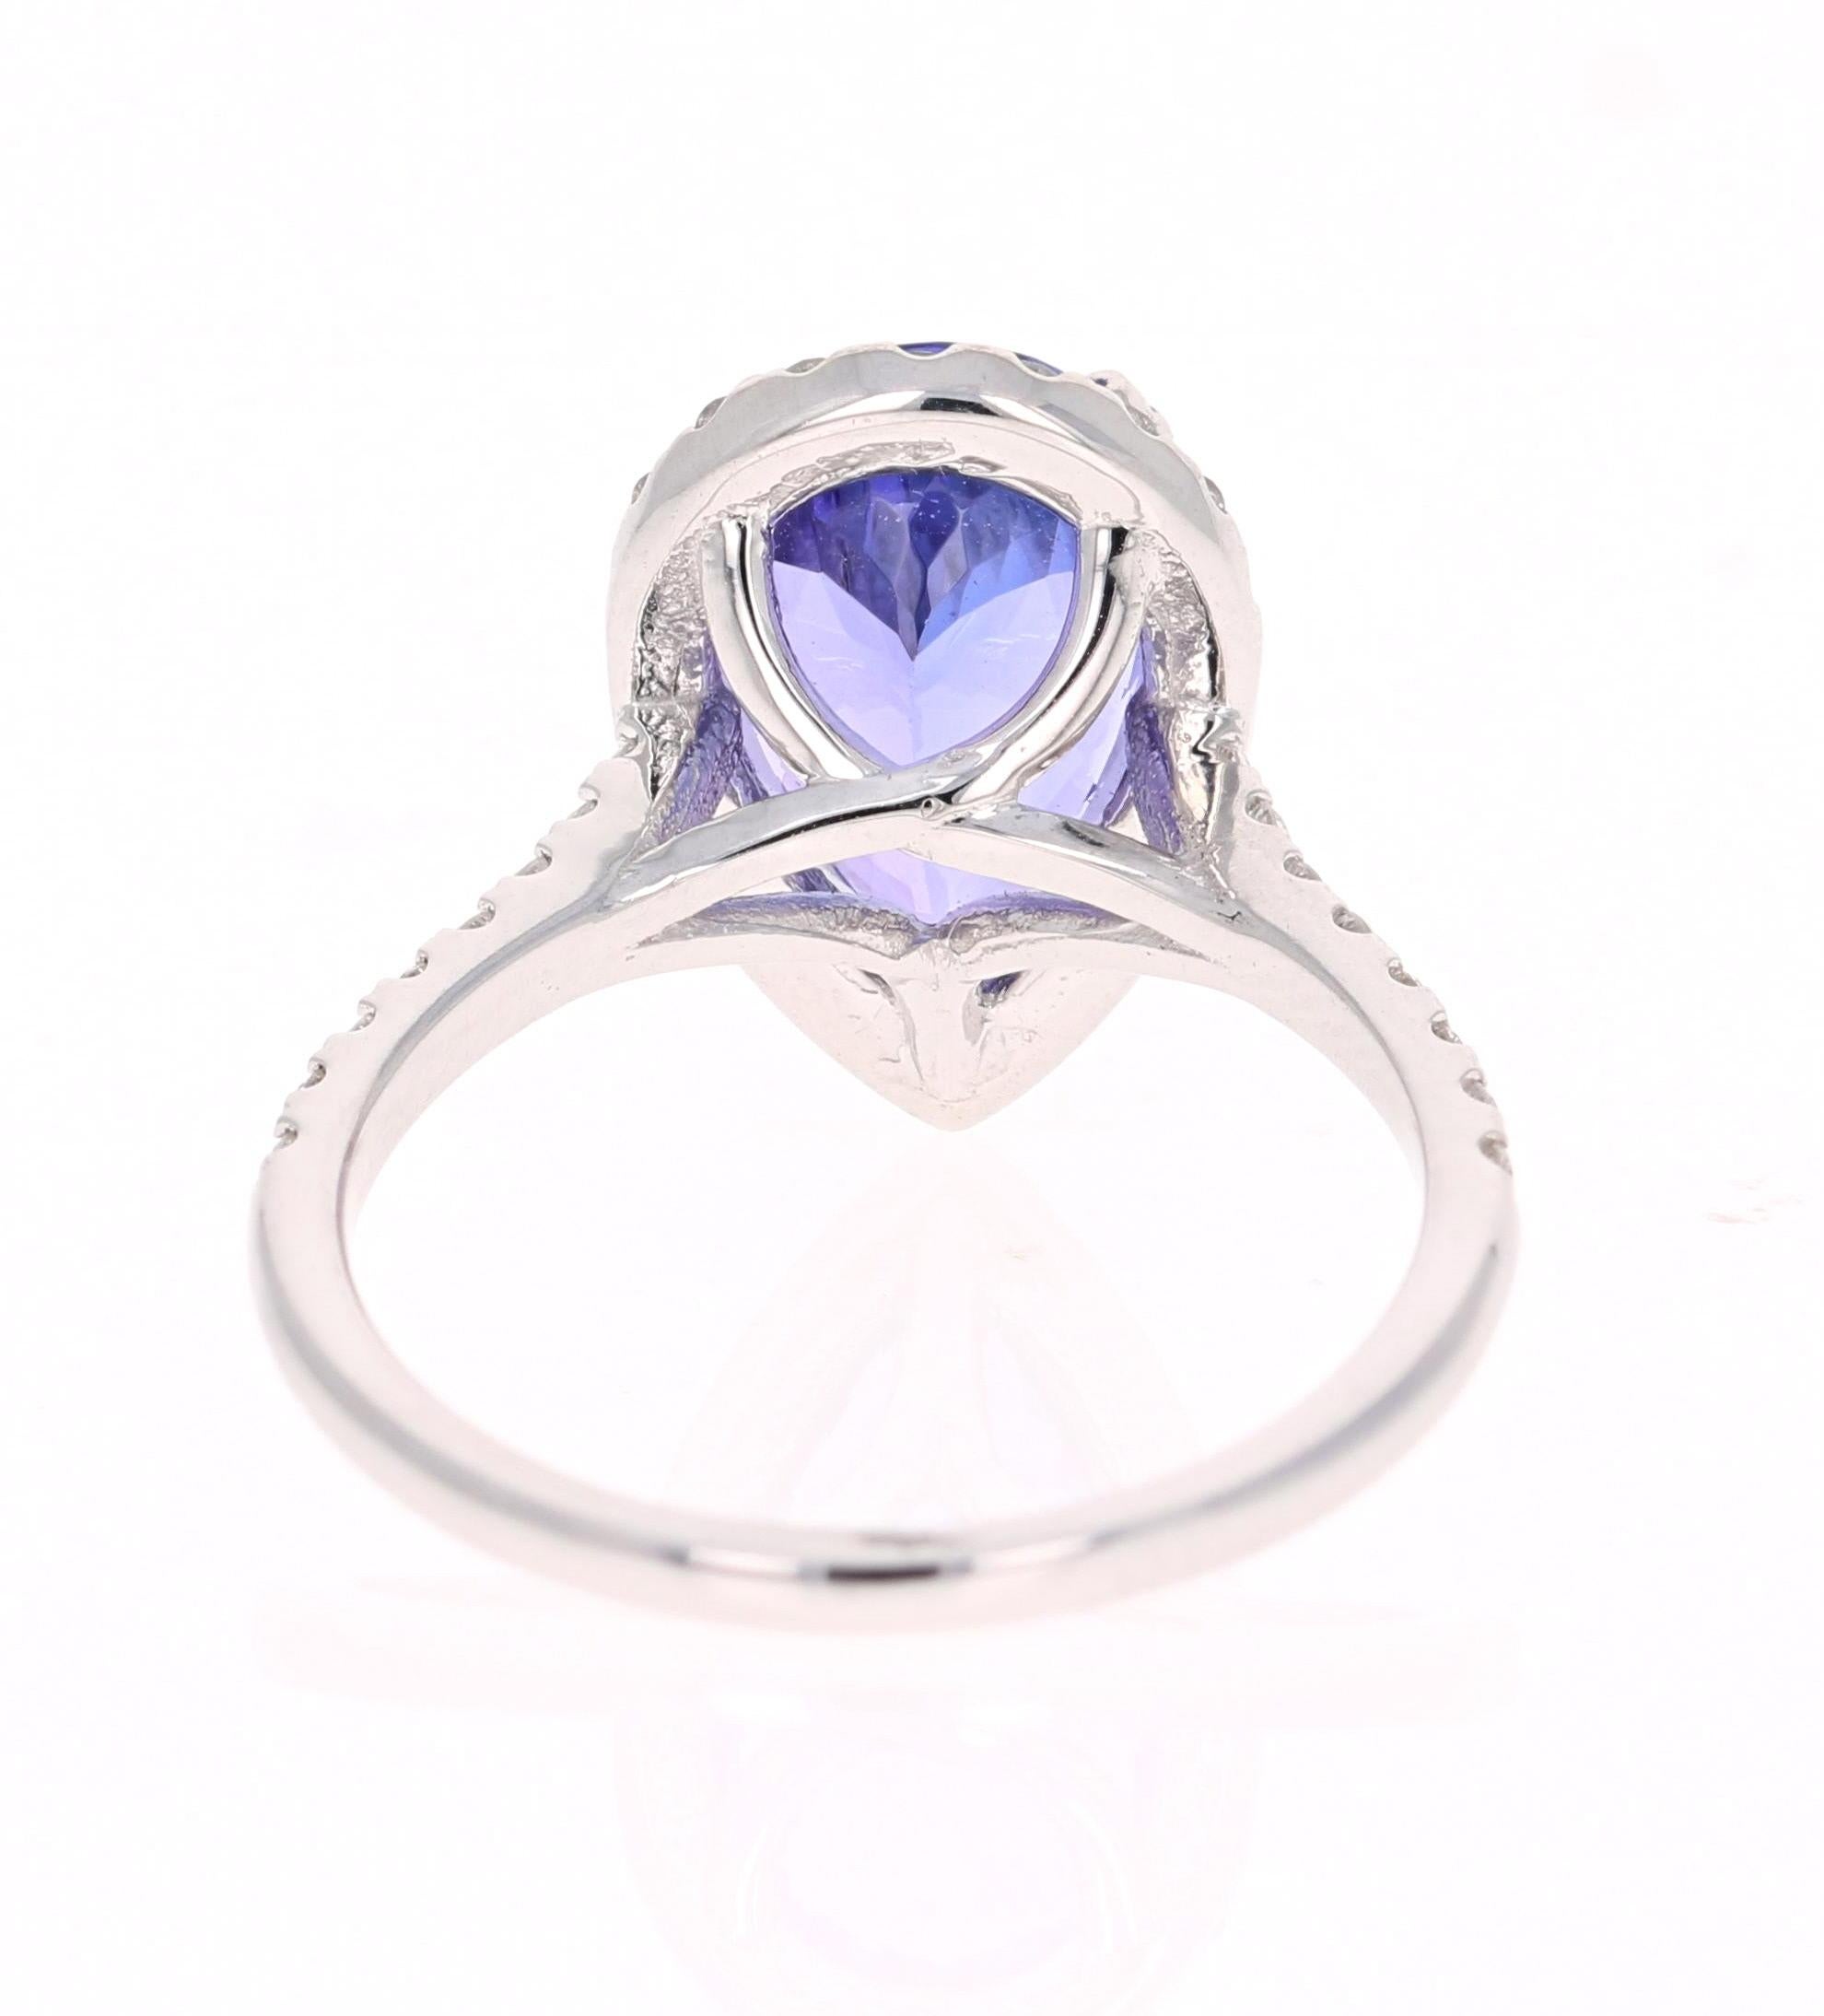 4.24 carat diamond ring price